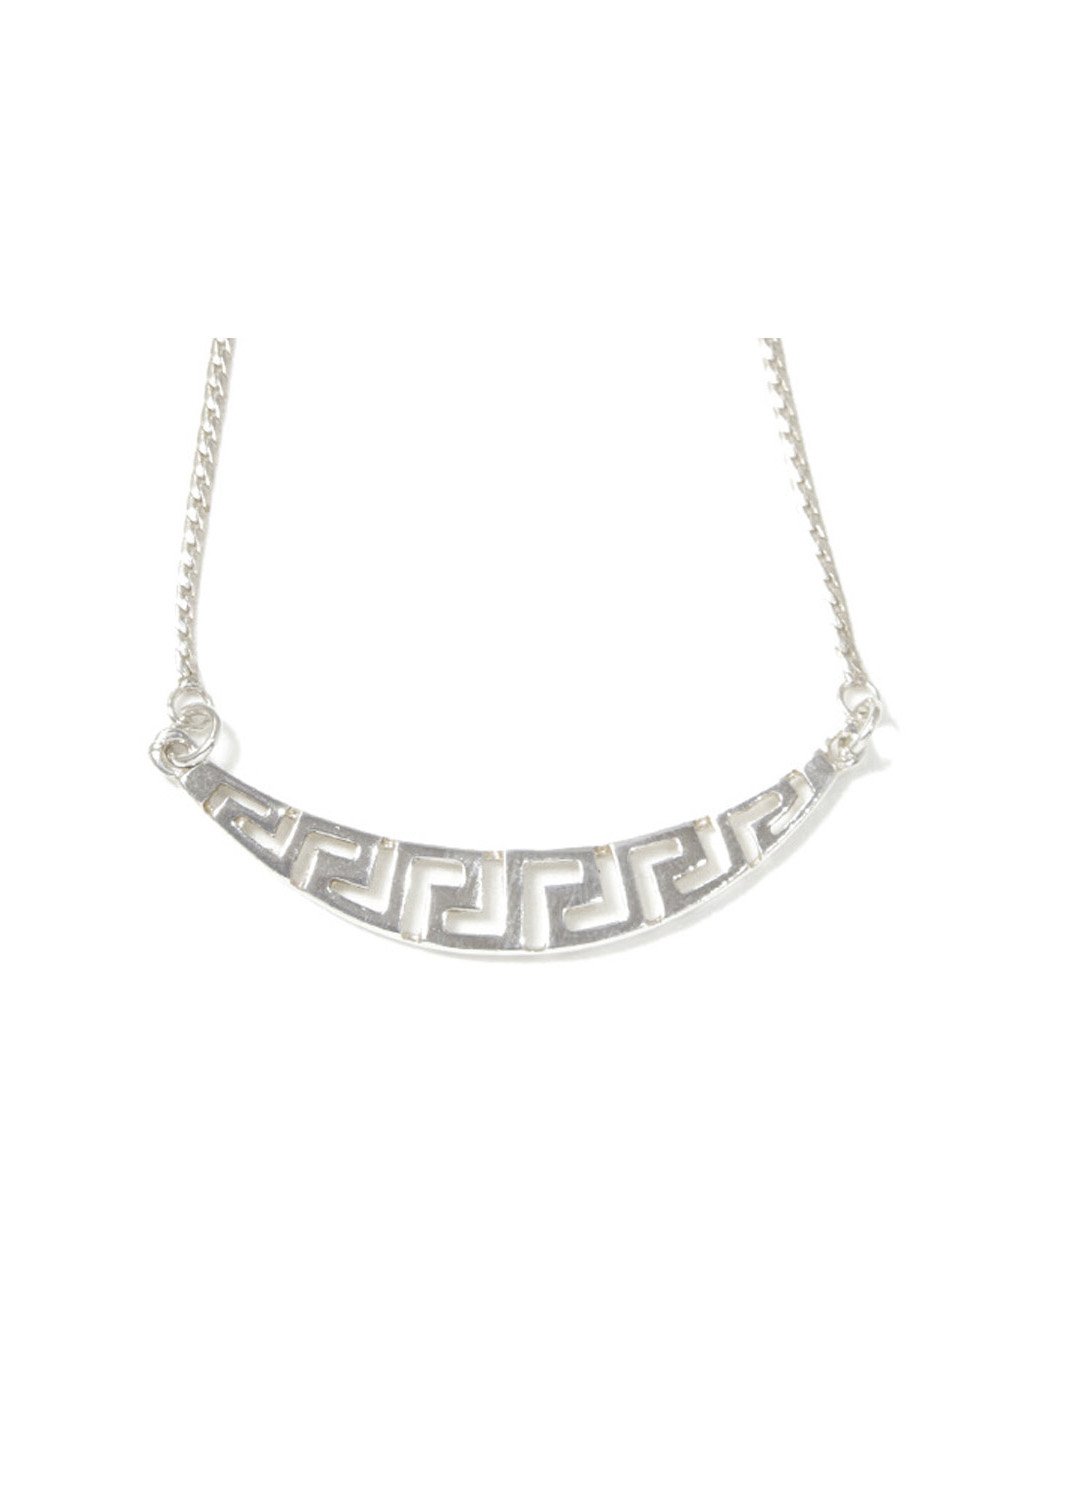 Greek key design - meander silver necklace